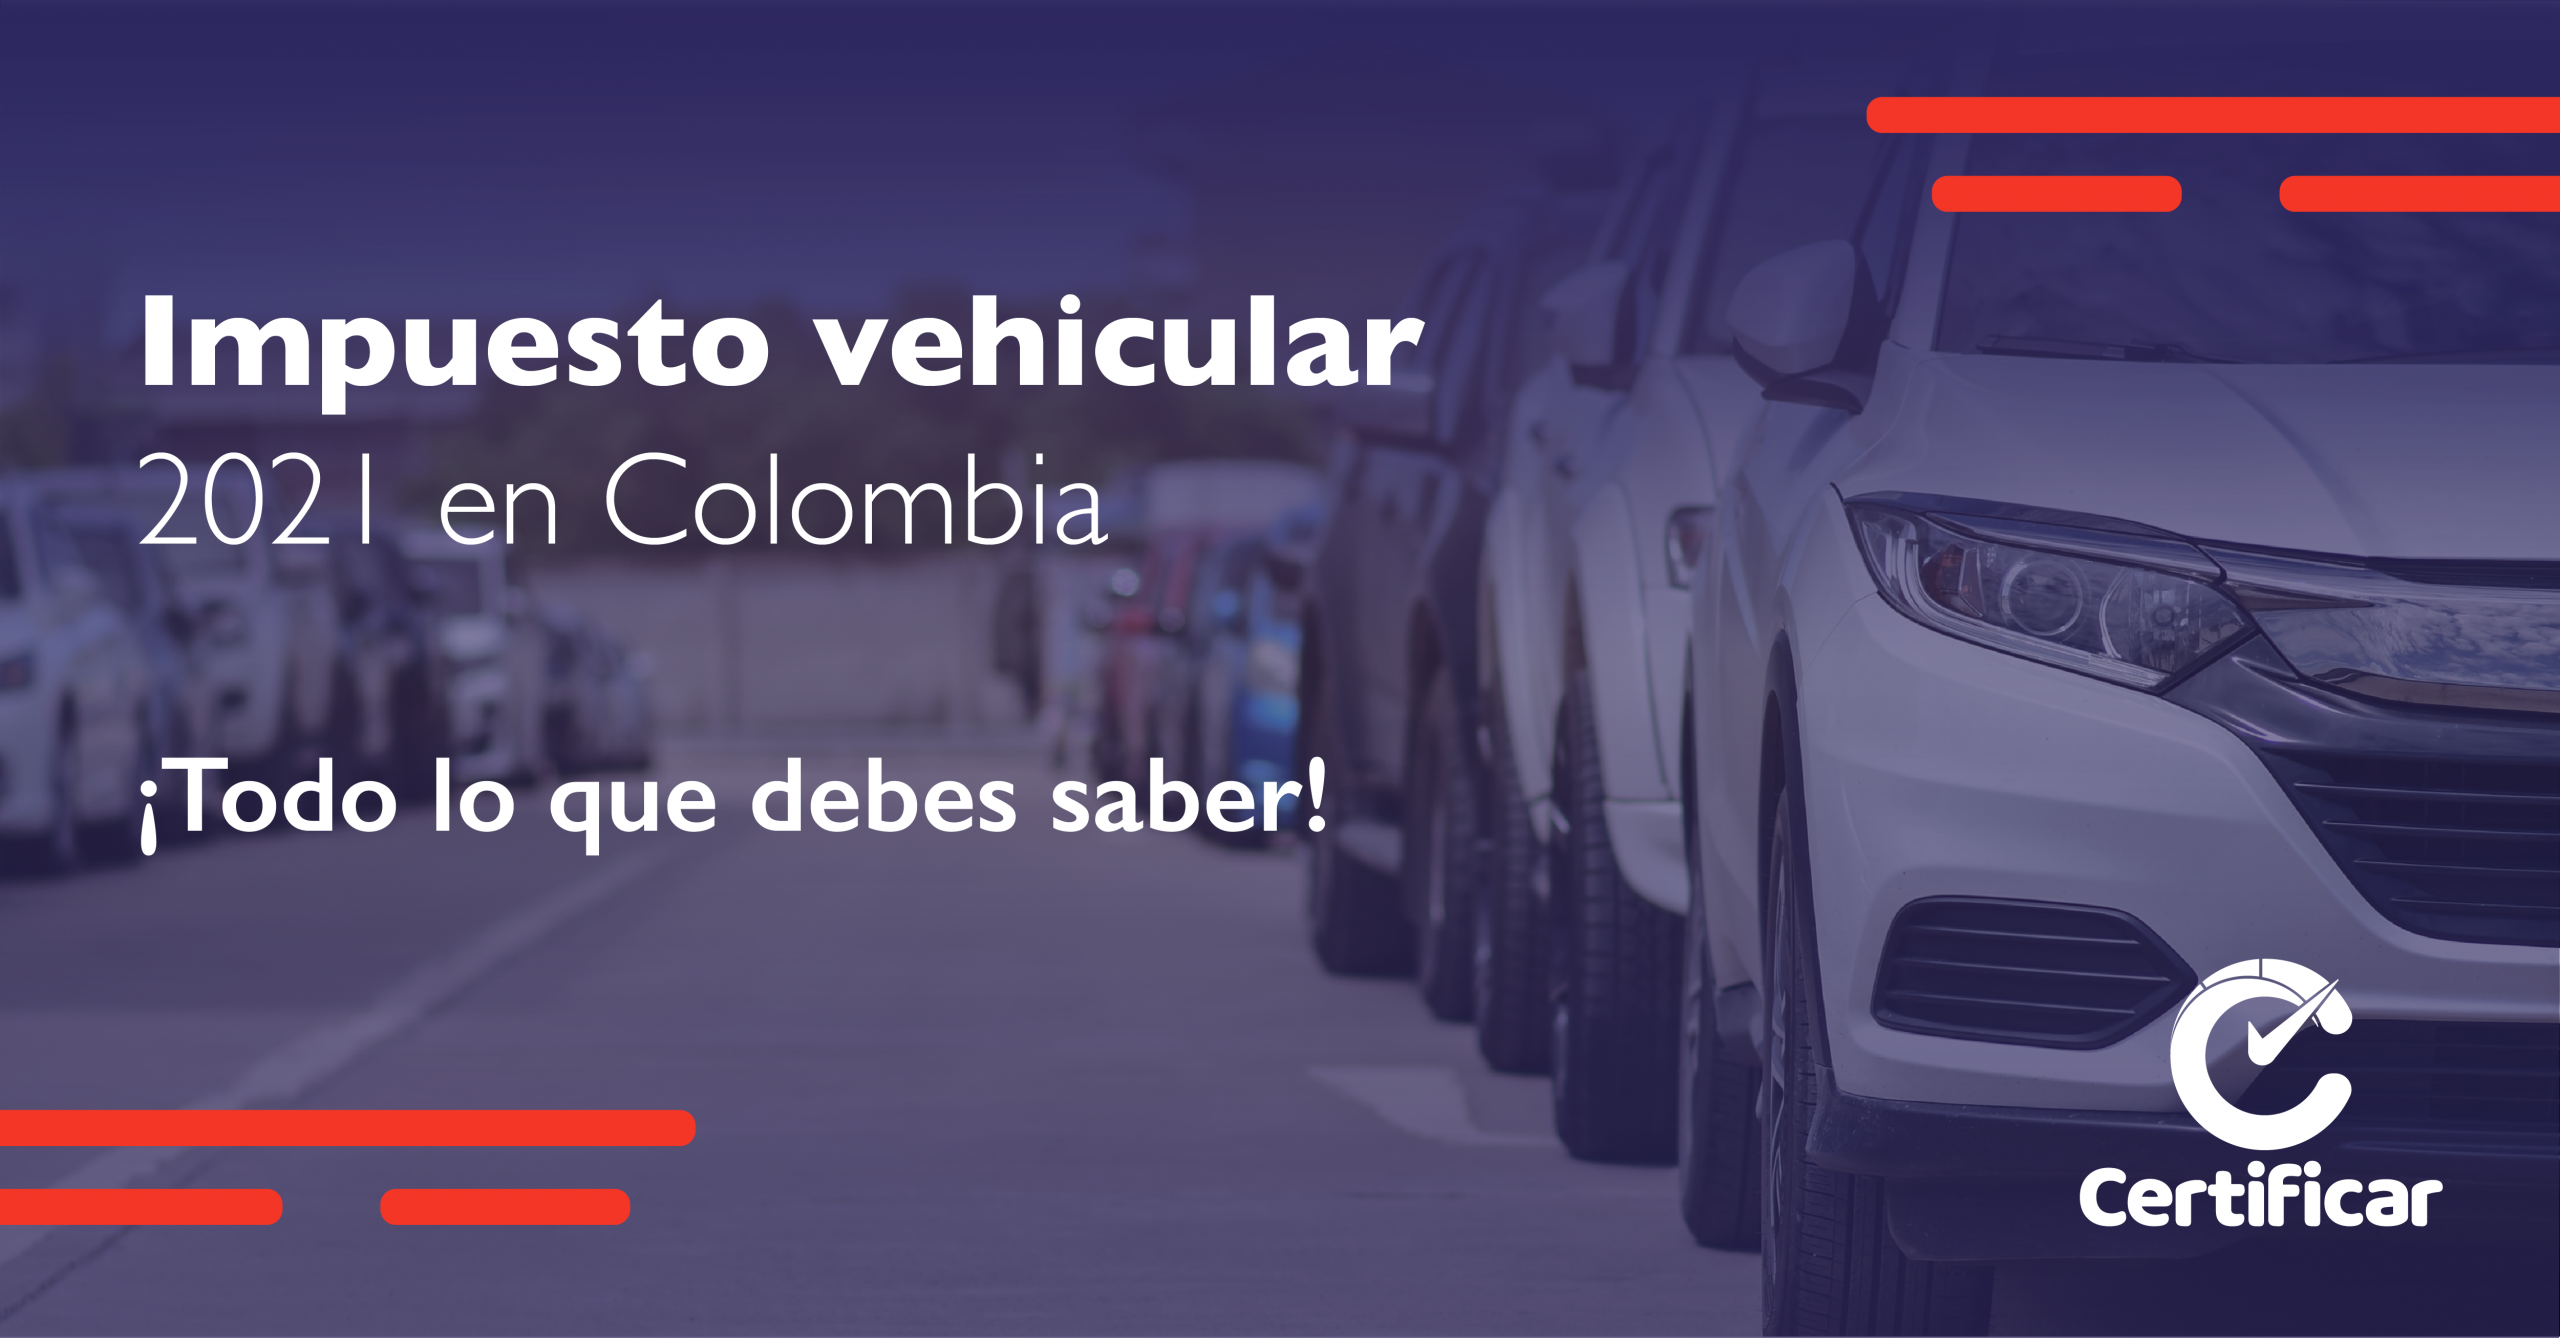 Impuesto Vehicular en Colombia 2021